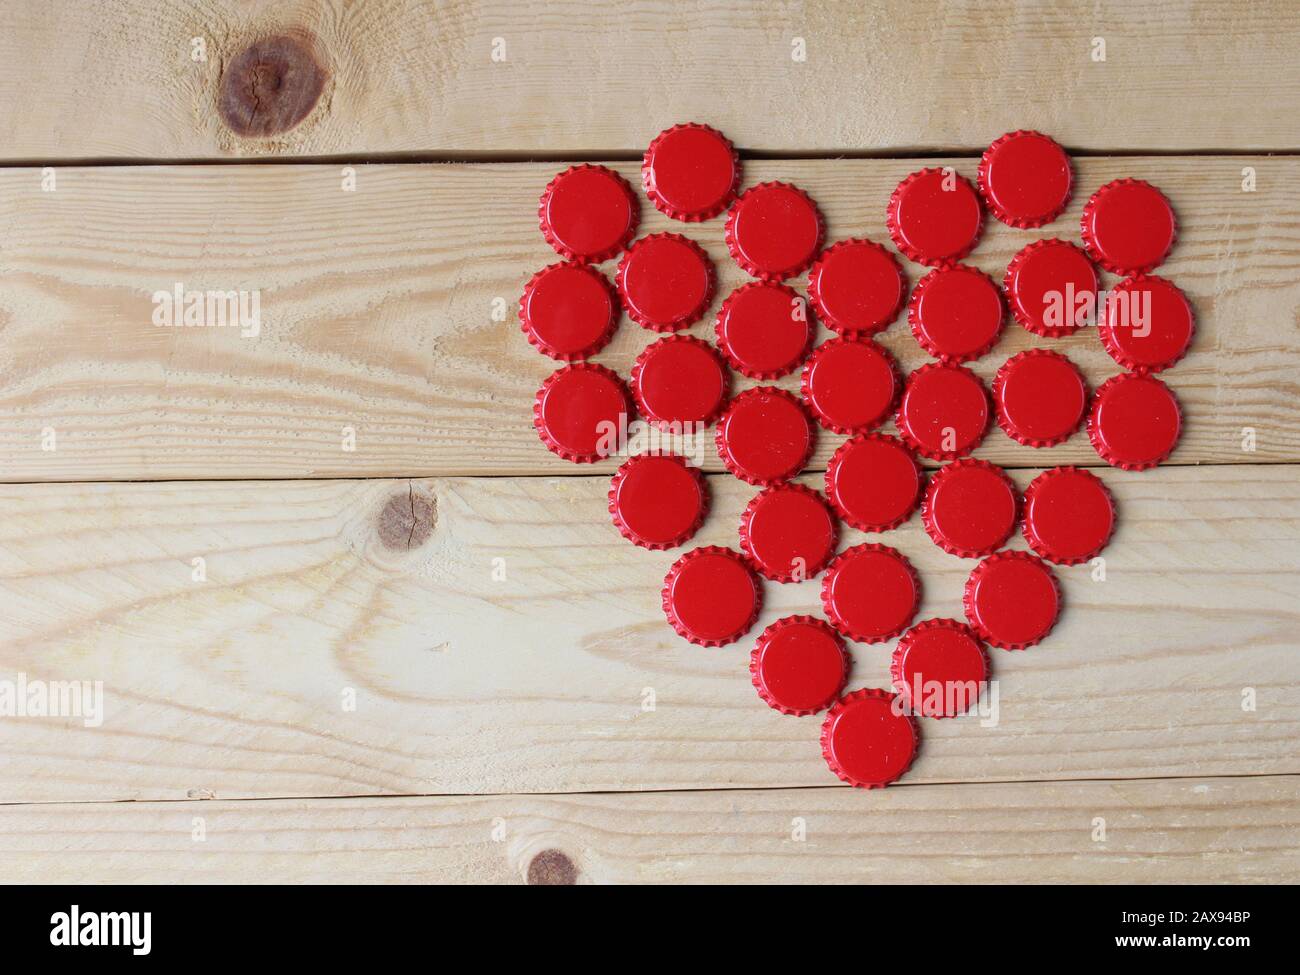 Ein rotes Liebesherz aus Bierflaschenoberteilen, oben auf einem rustikalen Holztisch betrachtet. Bier trinkt Valentinstag Konzept Stockfoto